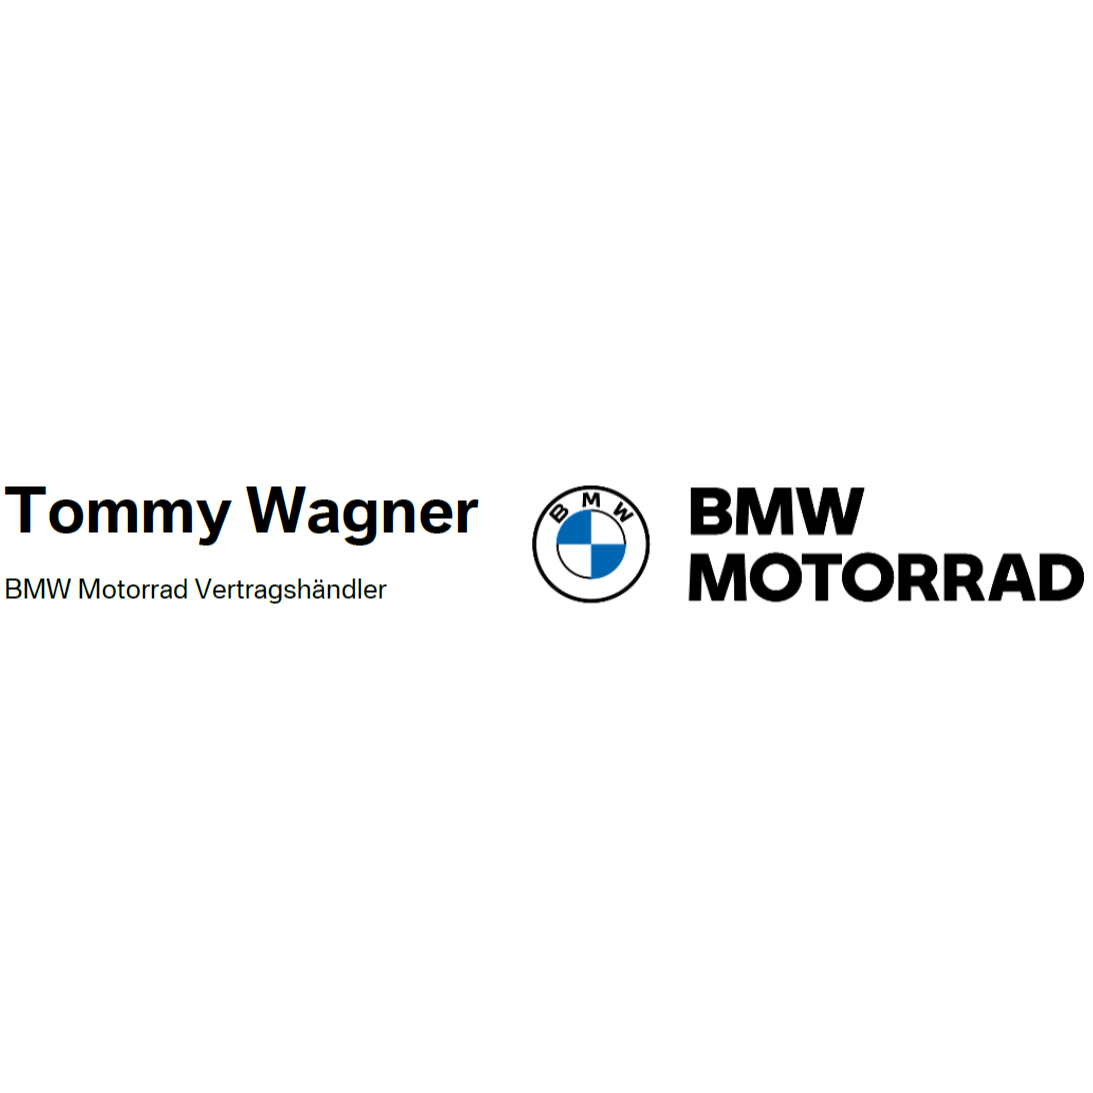 Tommy Wagner Motorrad GmbH in München in Gräfelfing - Logo